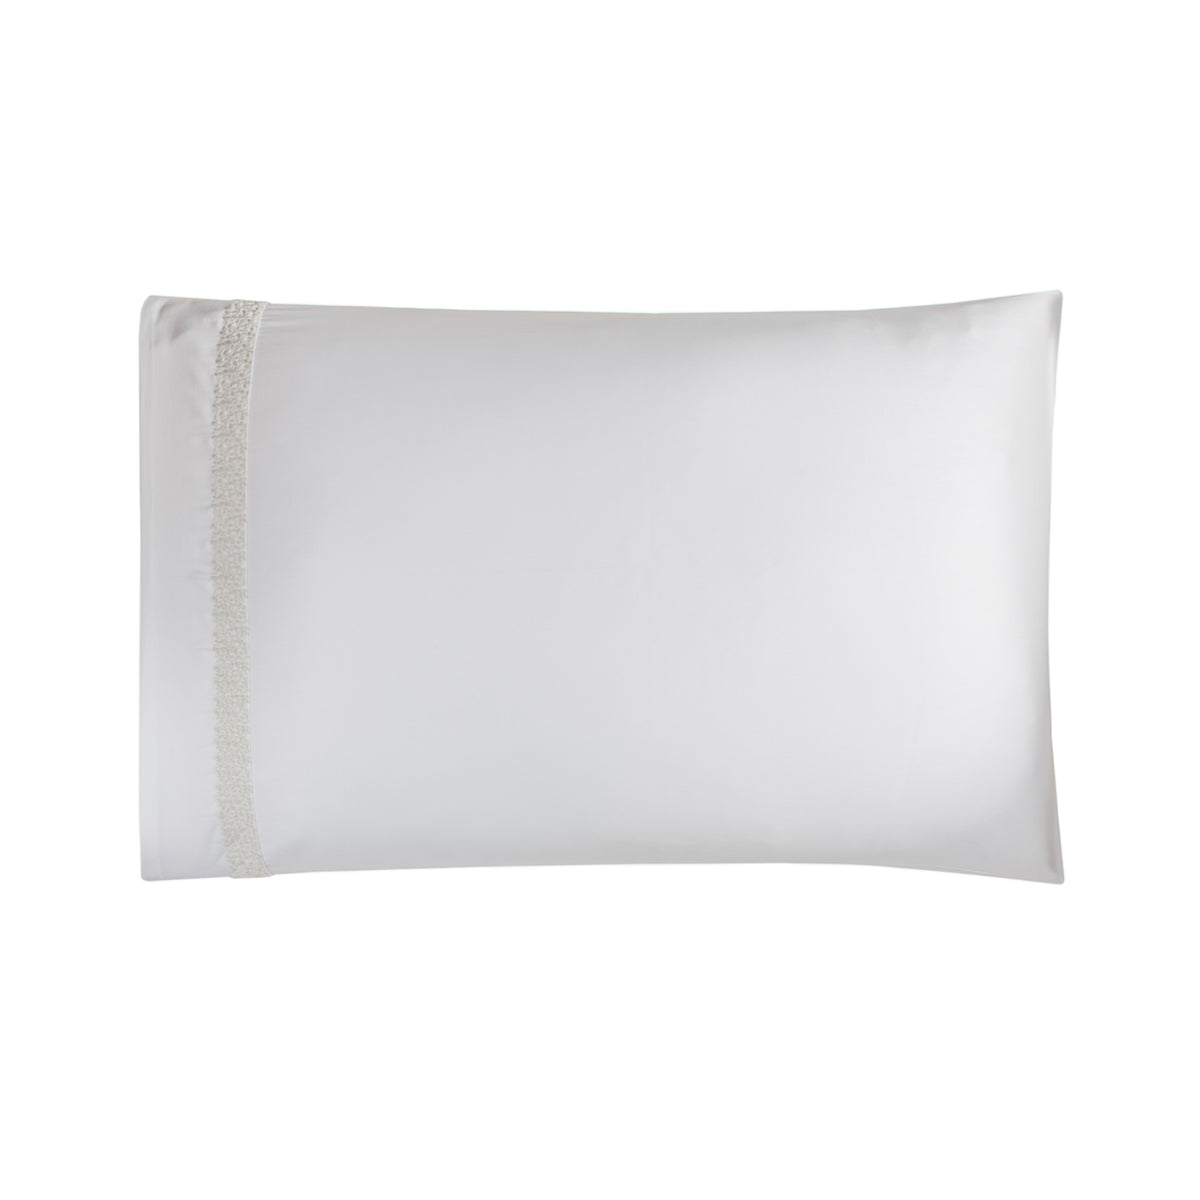 Silo of BOVI Malone Bedding Pillowcase White Dove Colored